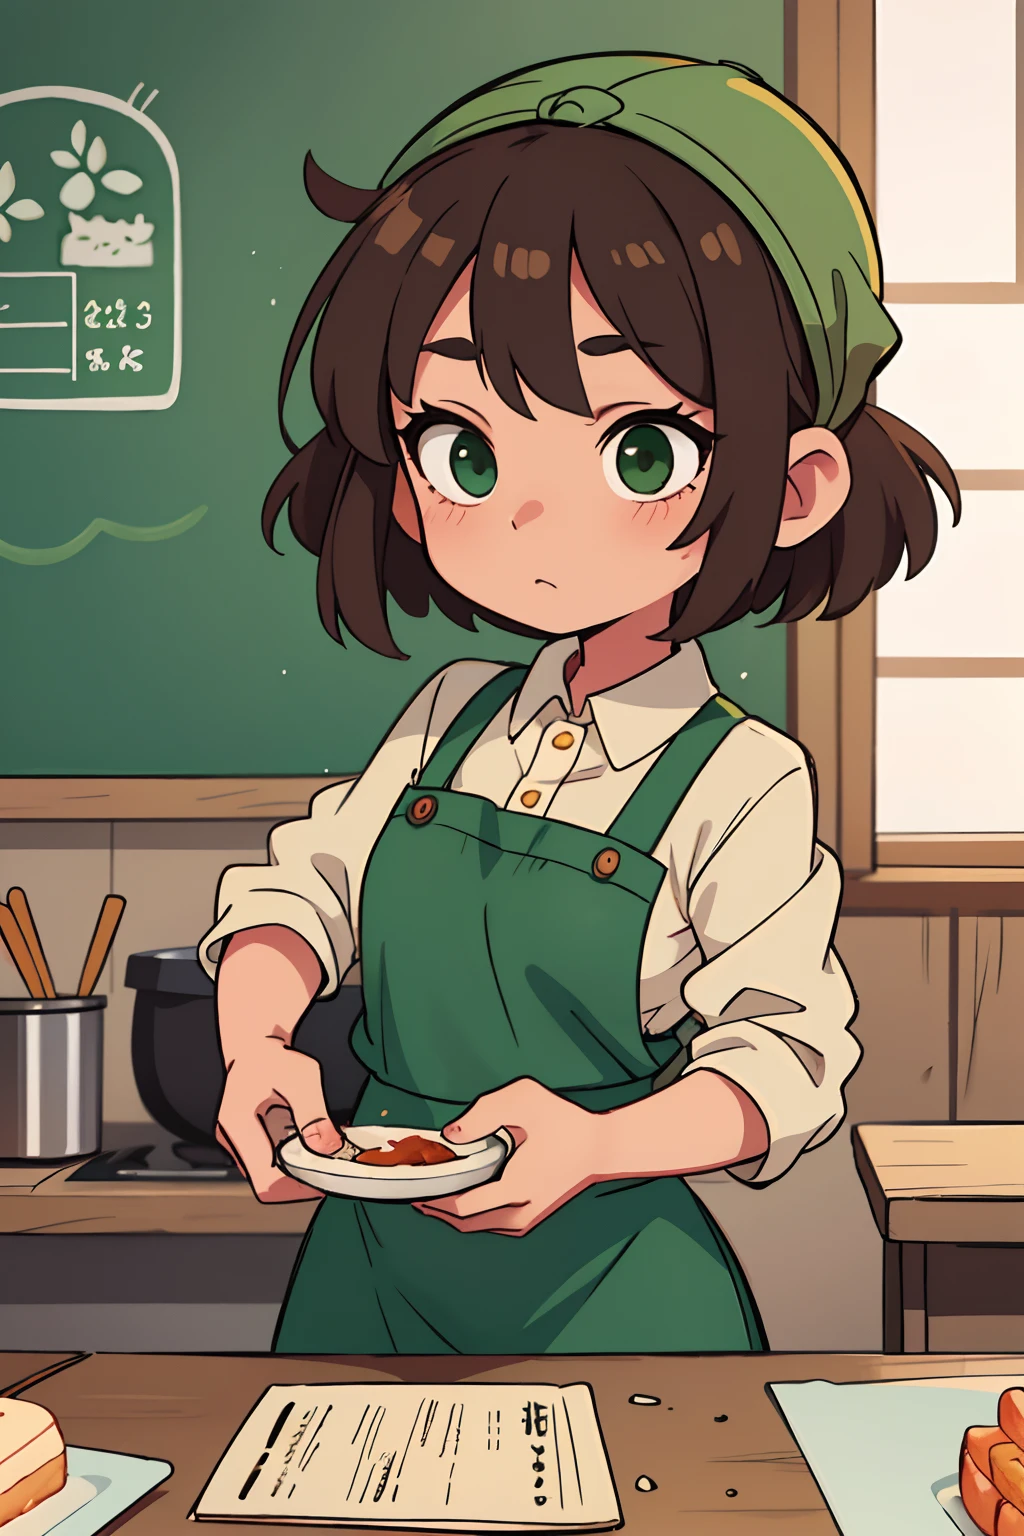 明るい茶色の髪の短い緑の目、頭に緑のエプロンを持つ女の子料理クラブのリーダー , ミニエプロンをした日本人はとても親切で思いやりがある